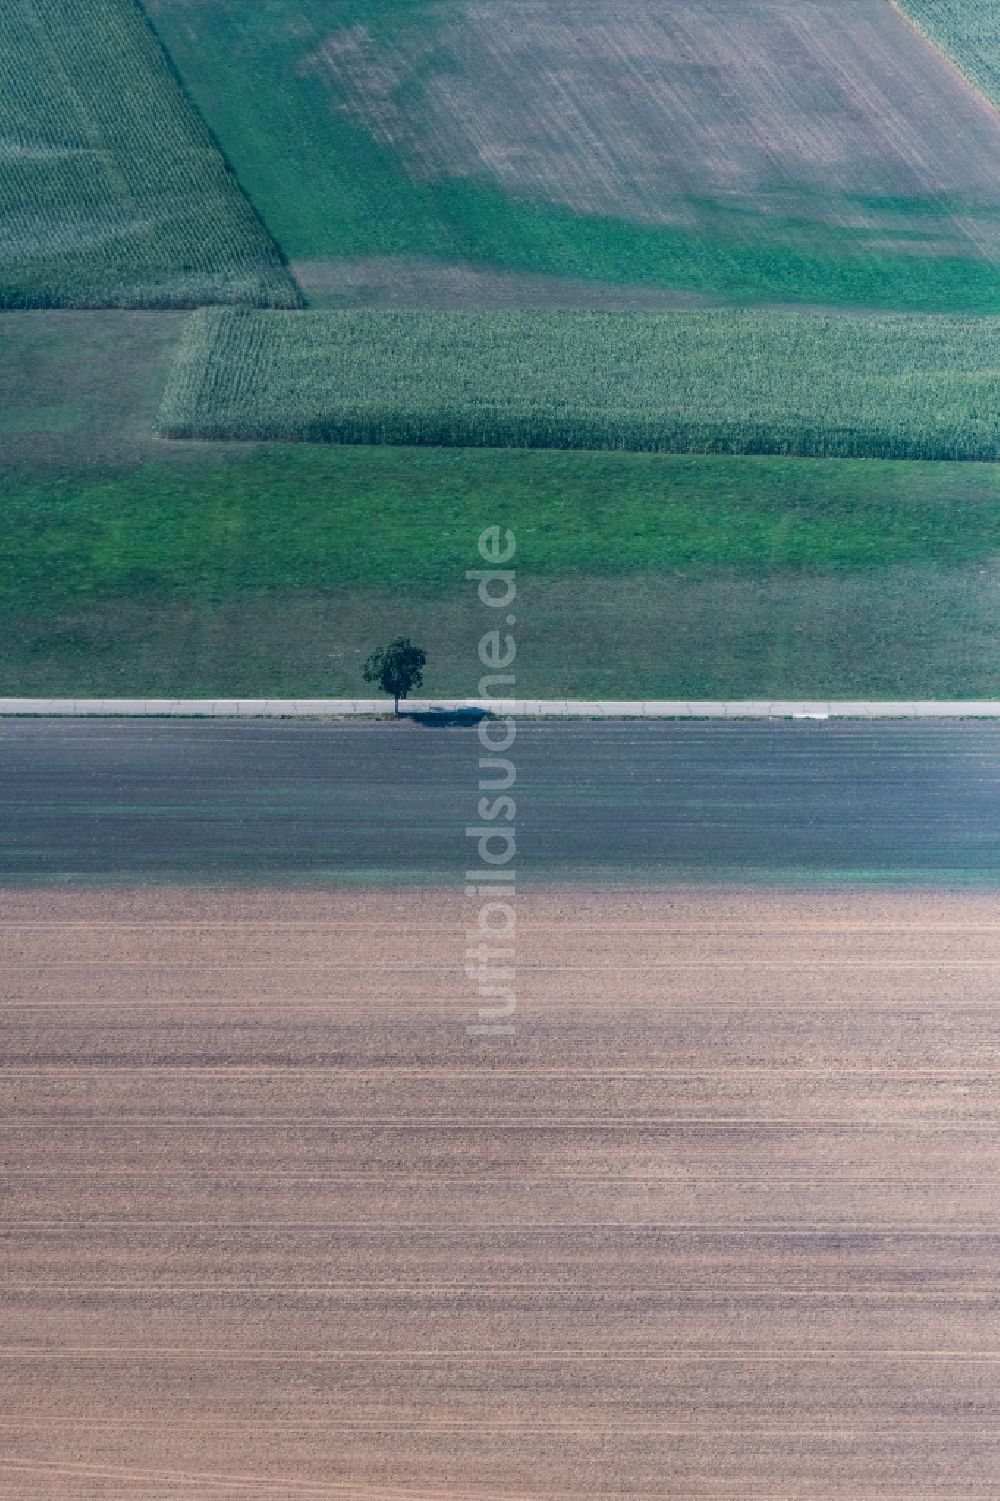 Luftbild Dillingen an der Donau - Baum mit Schattenbildung durch Lichteinstrahlung auf einem Feld in Dillingen an der Donau im Bundesland Bayern, Deutschland